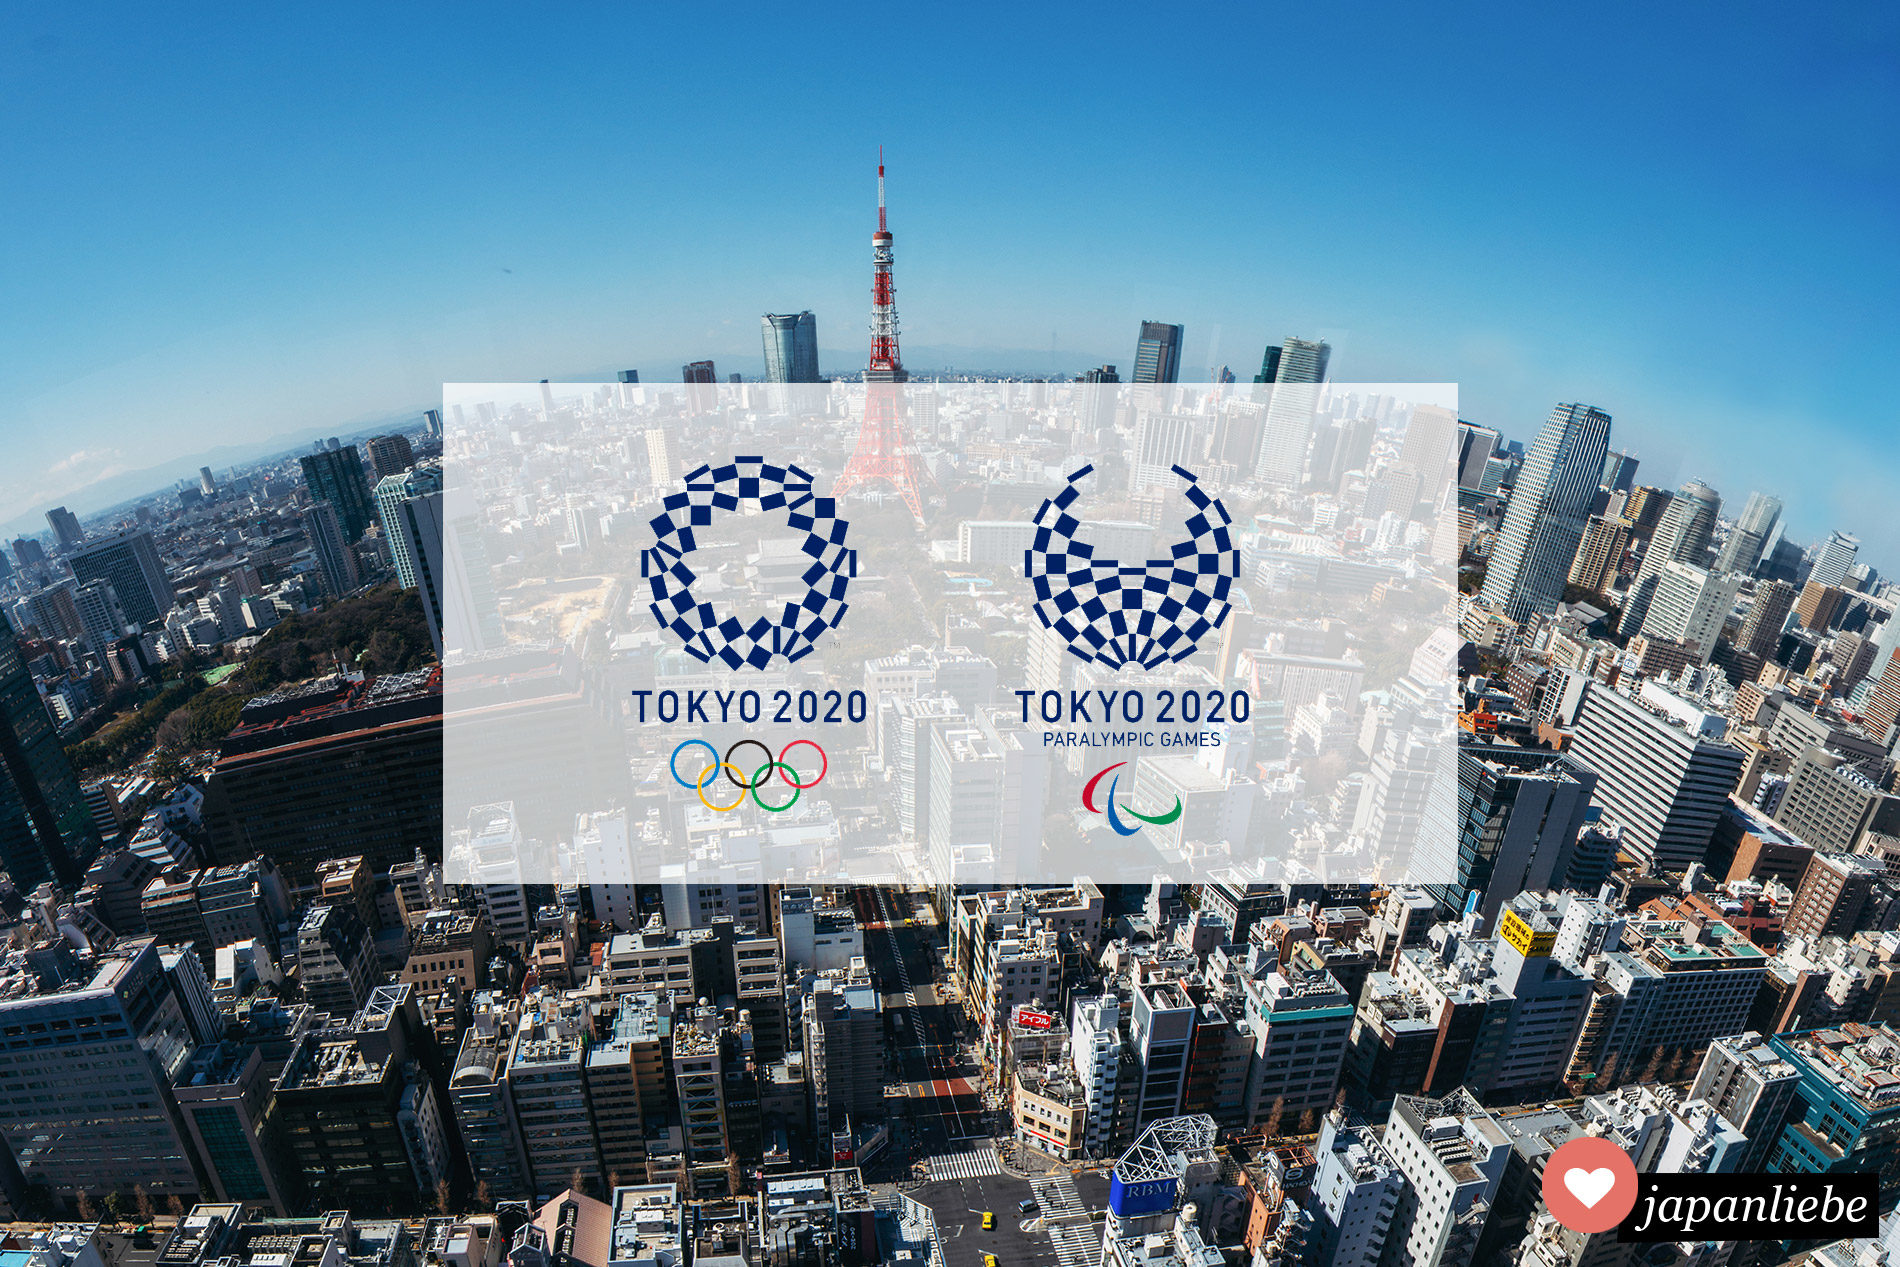 Die olympischen Sommerspiele finden 2020 in Tokio statt und ich plane dabei zu sein.